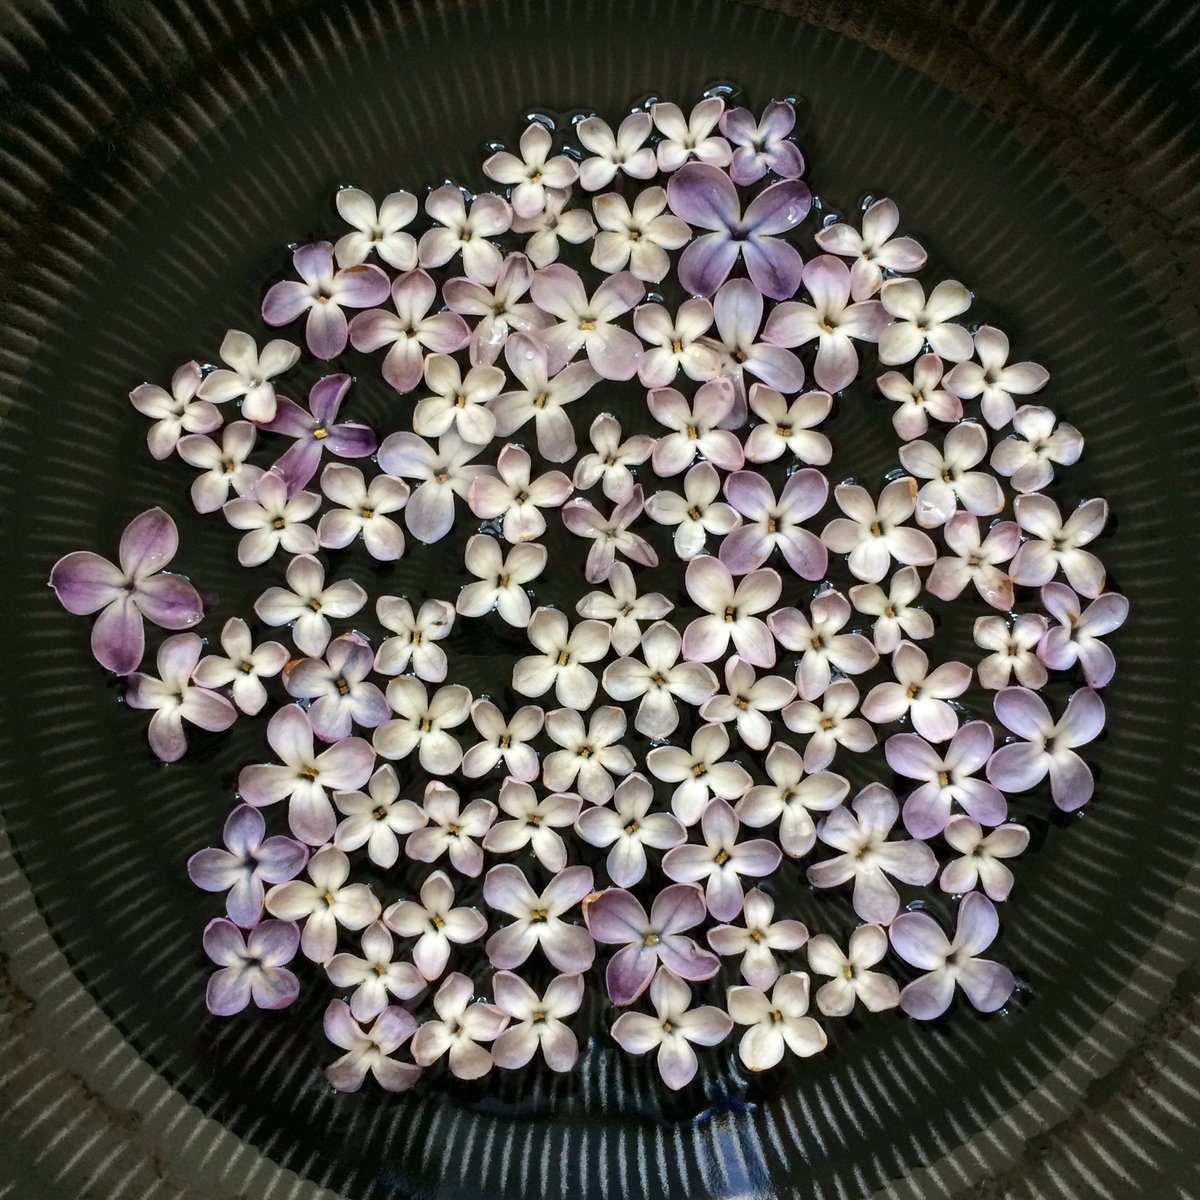 小栗左多里 インスタで前に ライラックの花びらは普通4枚だけど たまに5枚 のものがあって それはラッキーライラックと呼ばれている というのを教えてもらったので 花びら を拾ってみたら幾つか発見 種によって出やすいかも 写真の中に5個 ラッキー